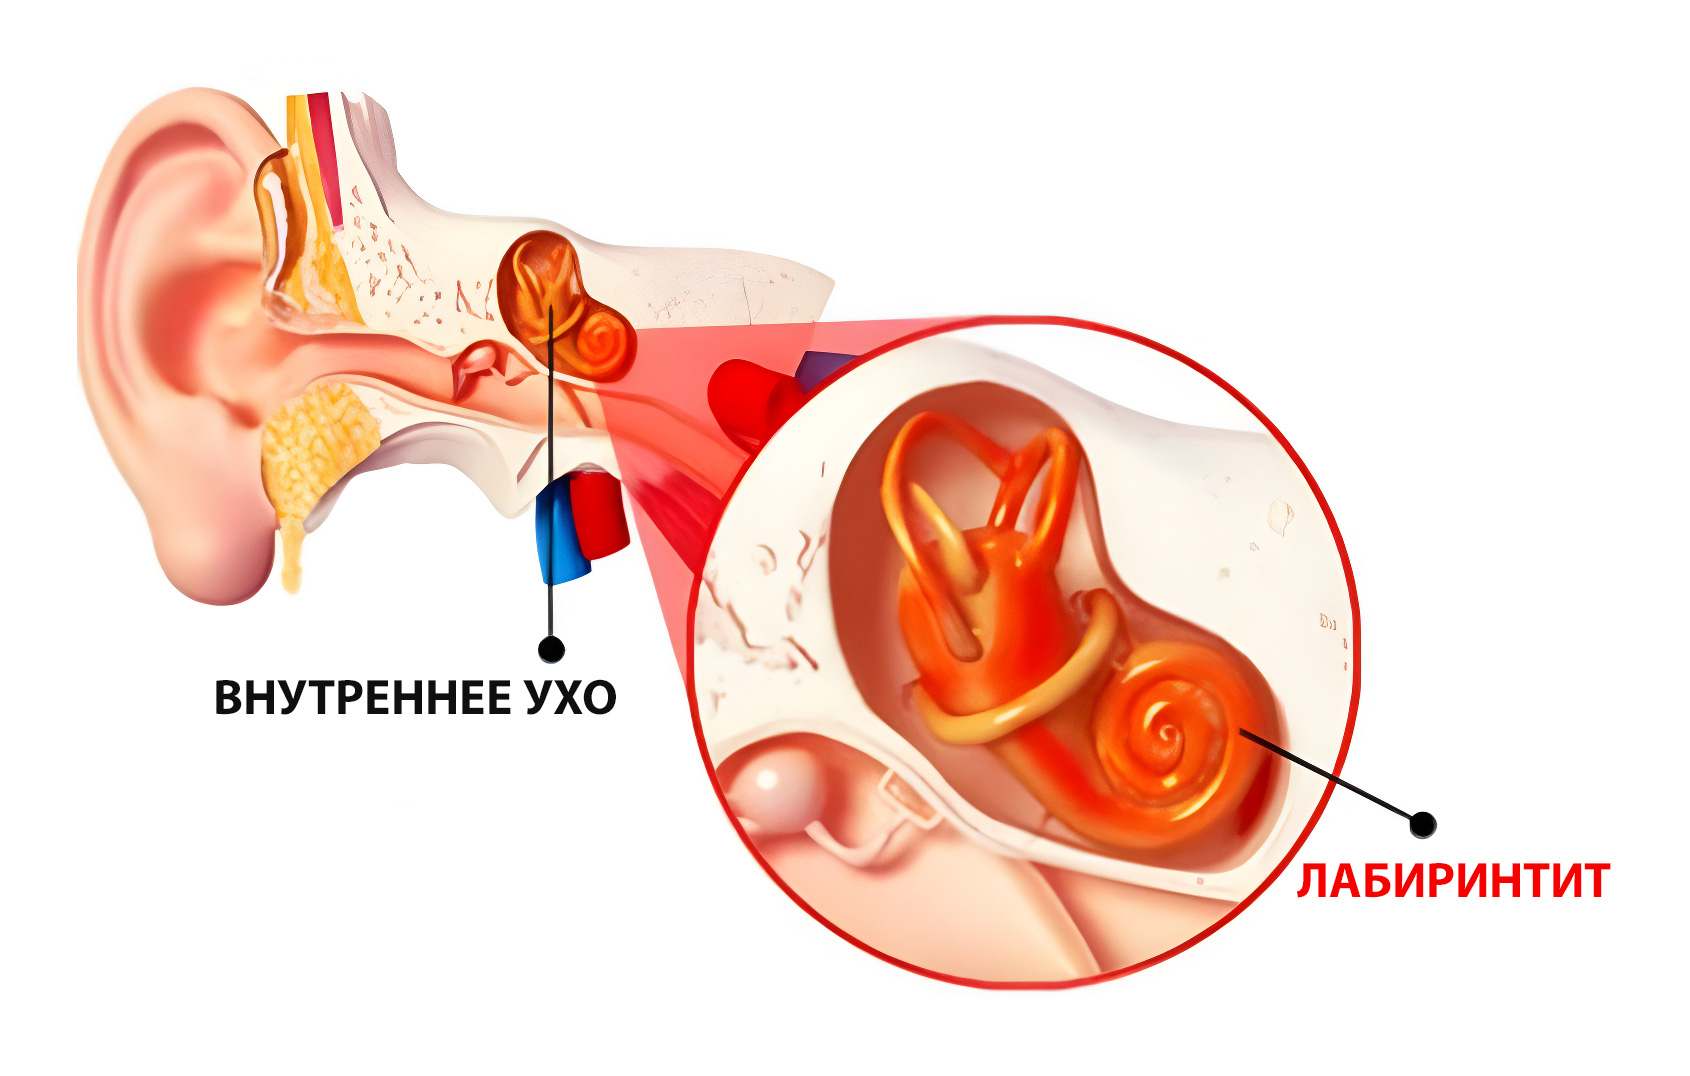 Нарушение внутреннего уха. Воспаление внутреннего уха лабиринтит. Воспаление среднего уха (лабиринтит);. Воспаление среднего уха лабиринтит симптомы. Воспалительные заболевания внутреннего уха (лабиринтиты)..